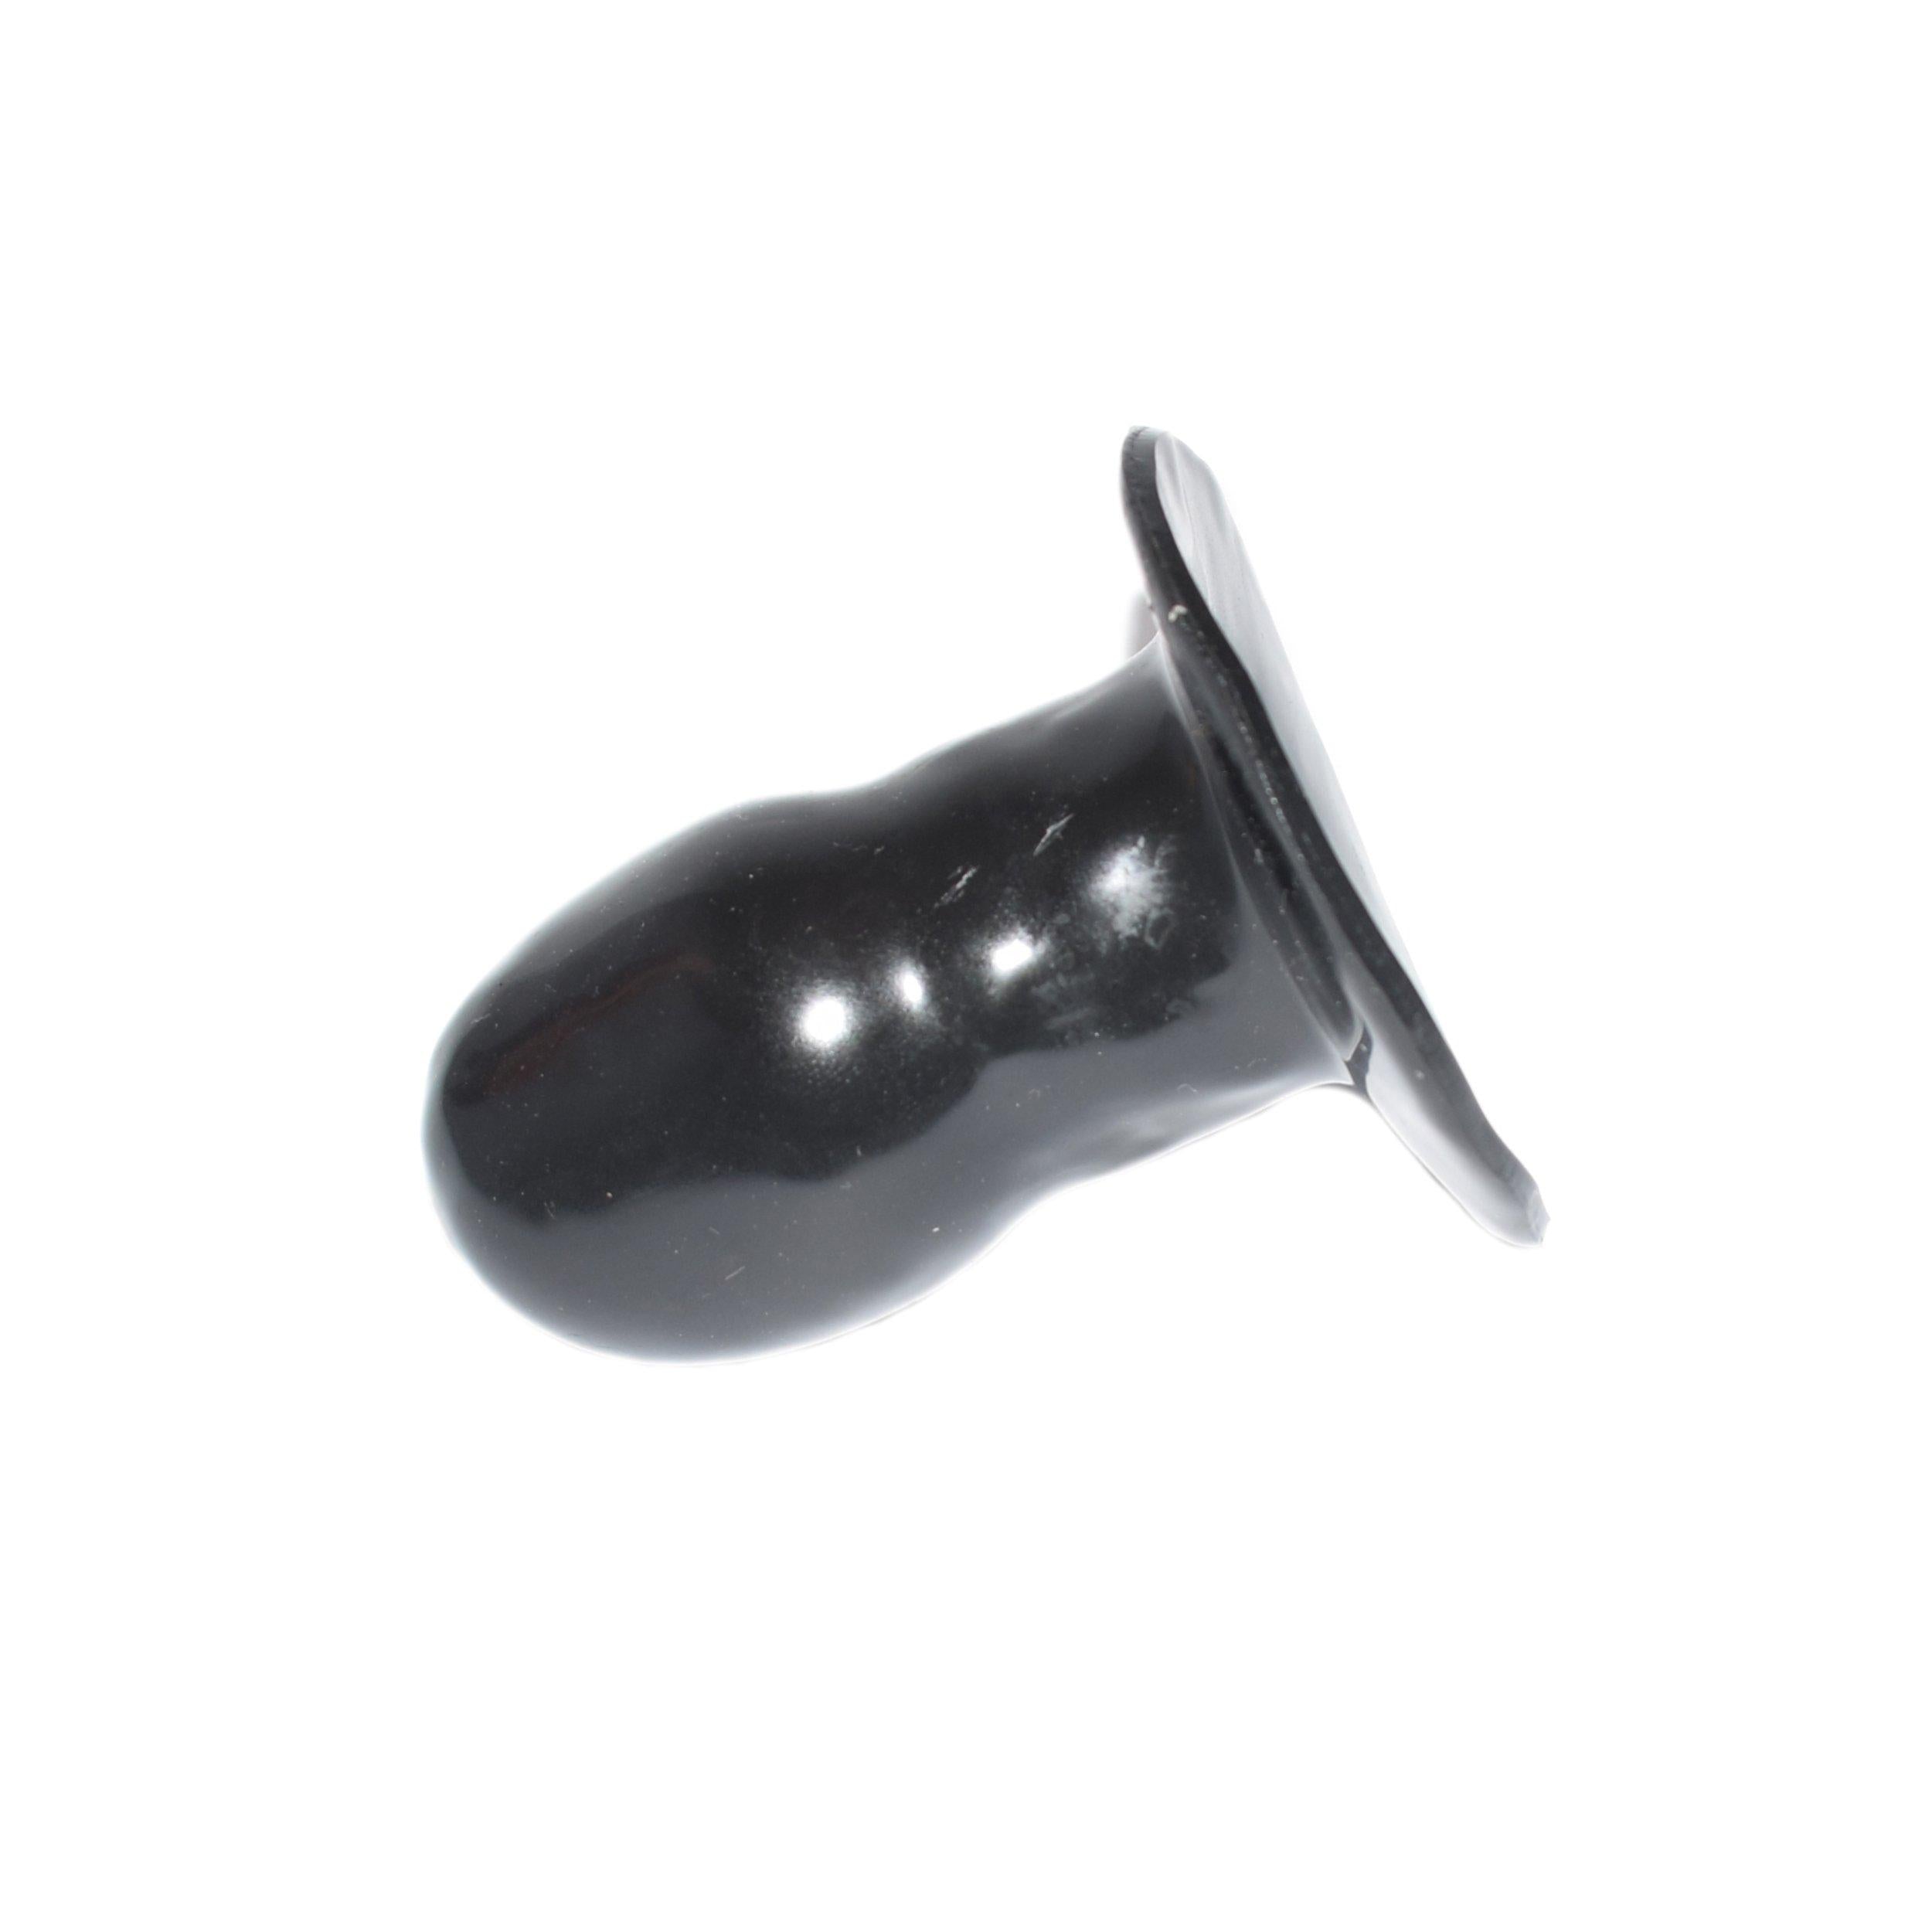 Rubberfashion Latex Dildo - Latexdildo klein - realistischer Dildo mit Klebefläche für Frauen und Männer 6,5 x 3,5 cm